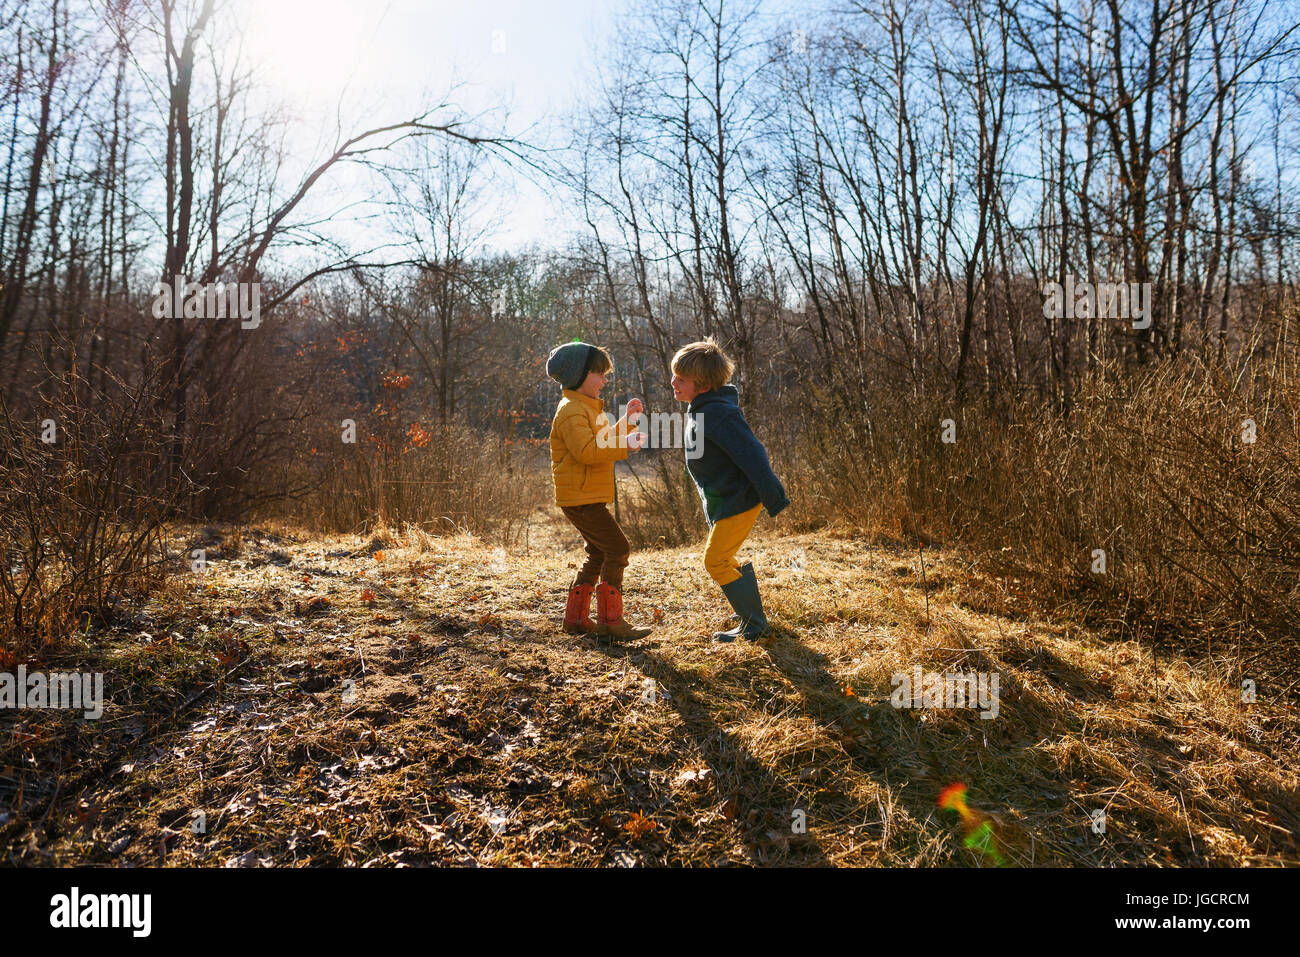 Dos muchachos jugando en el bosque Foto de stock